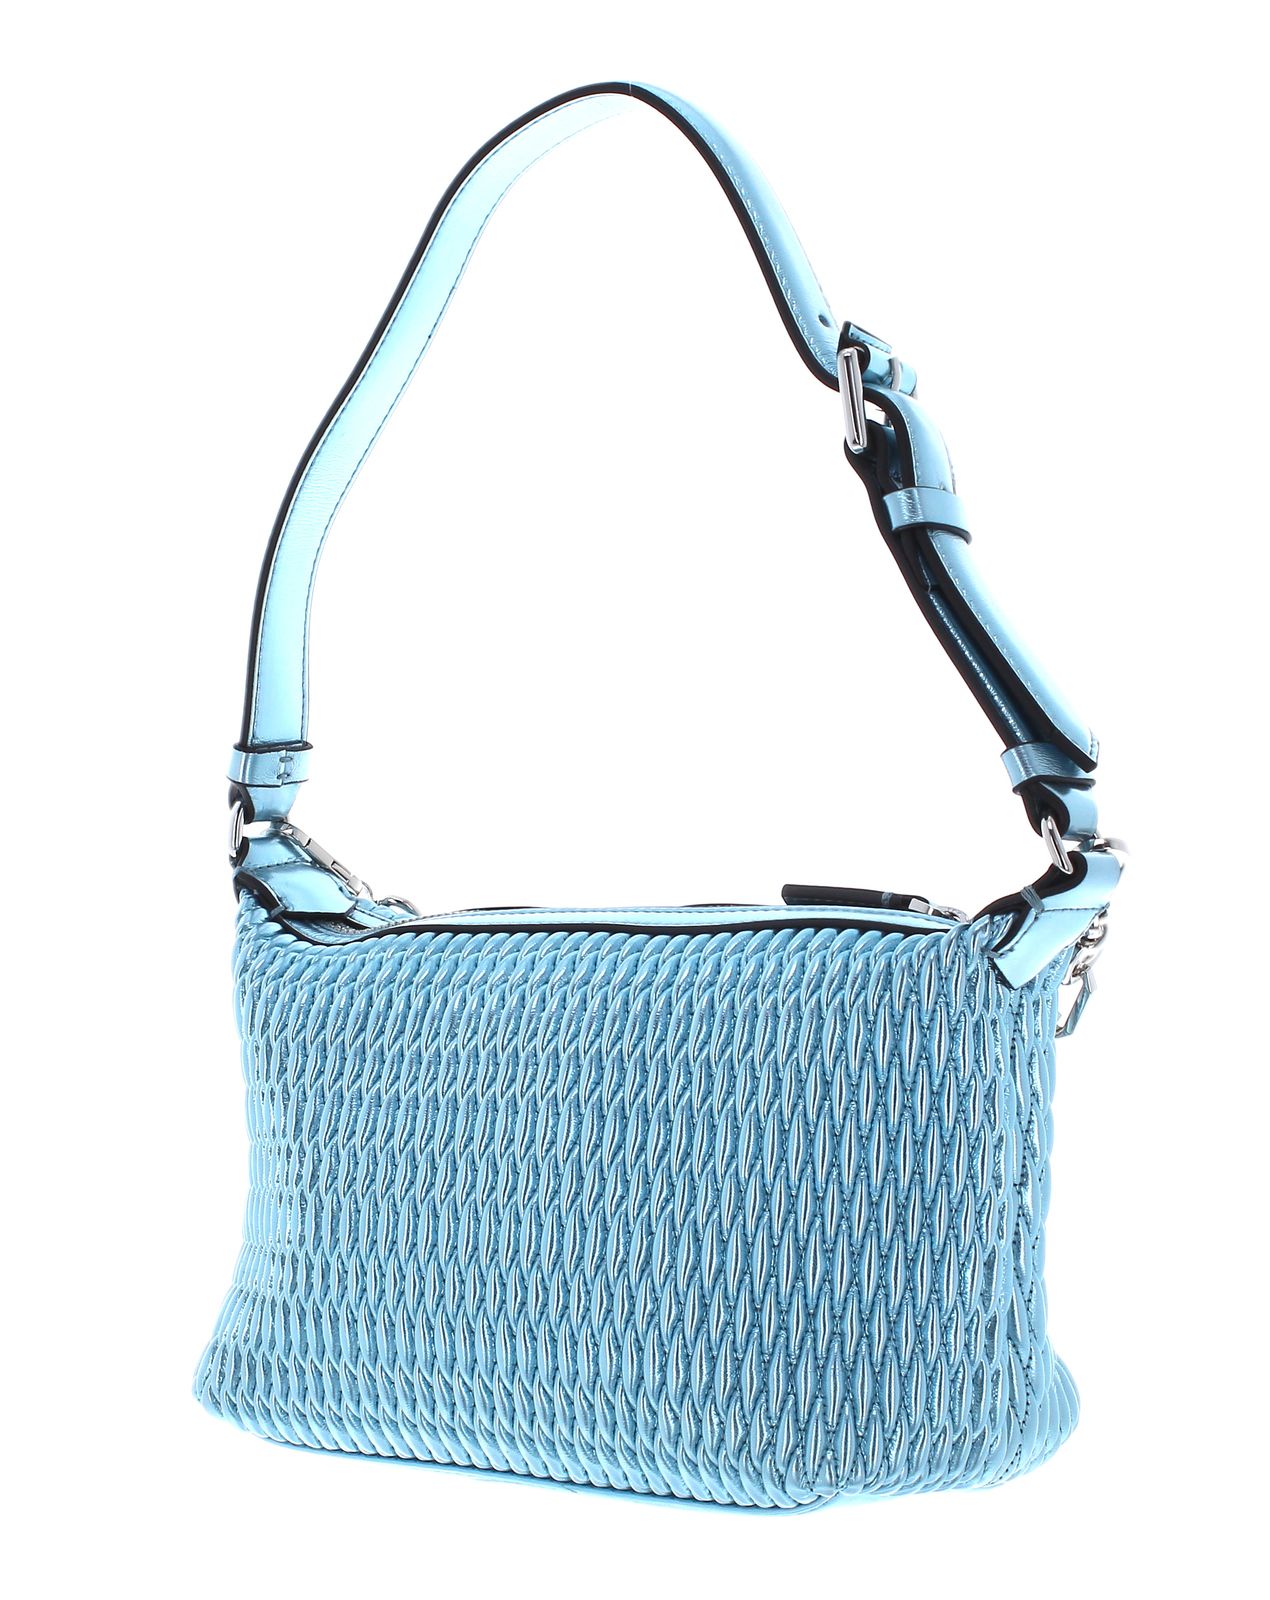 KARL LAGERFELD Quilt Shoulderbag Met | Buy bags, purses & accessories ...